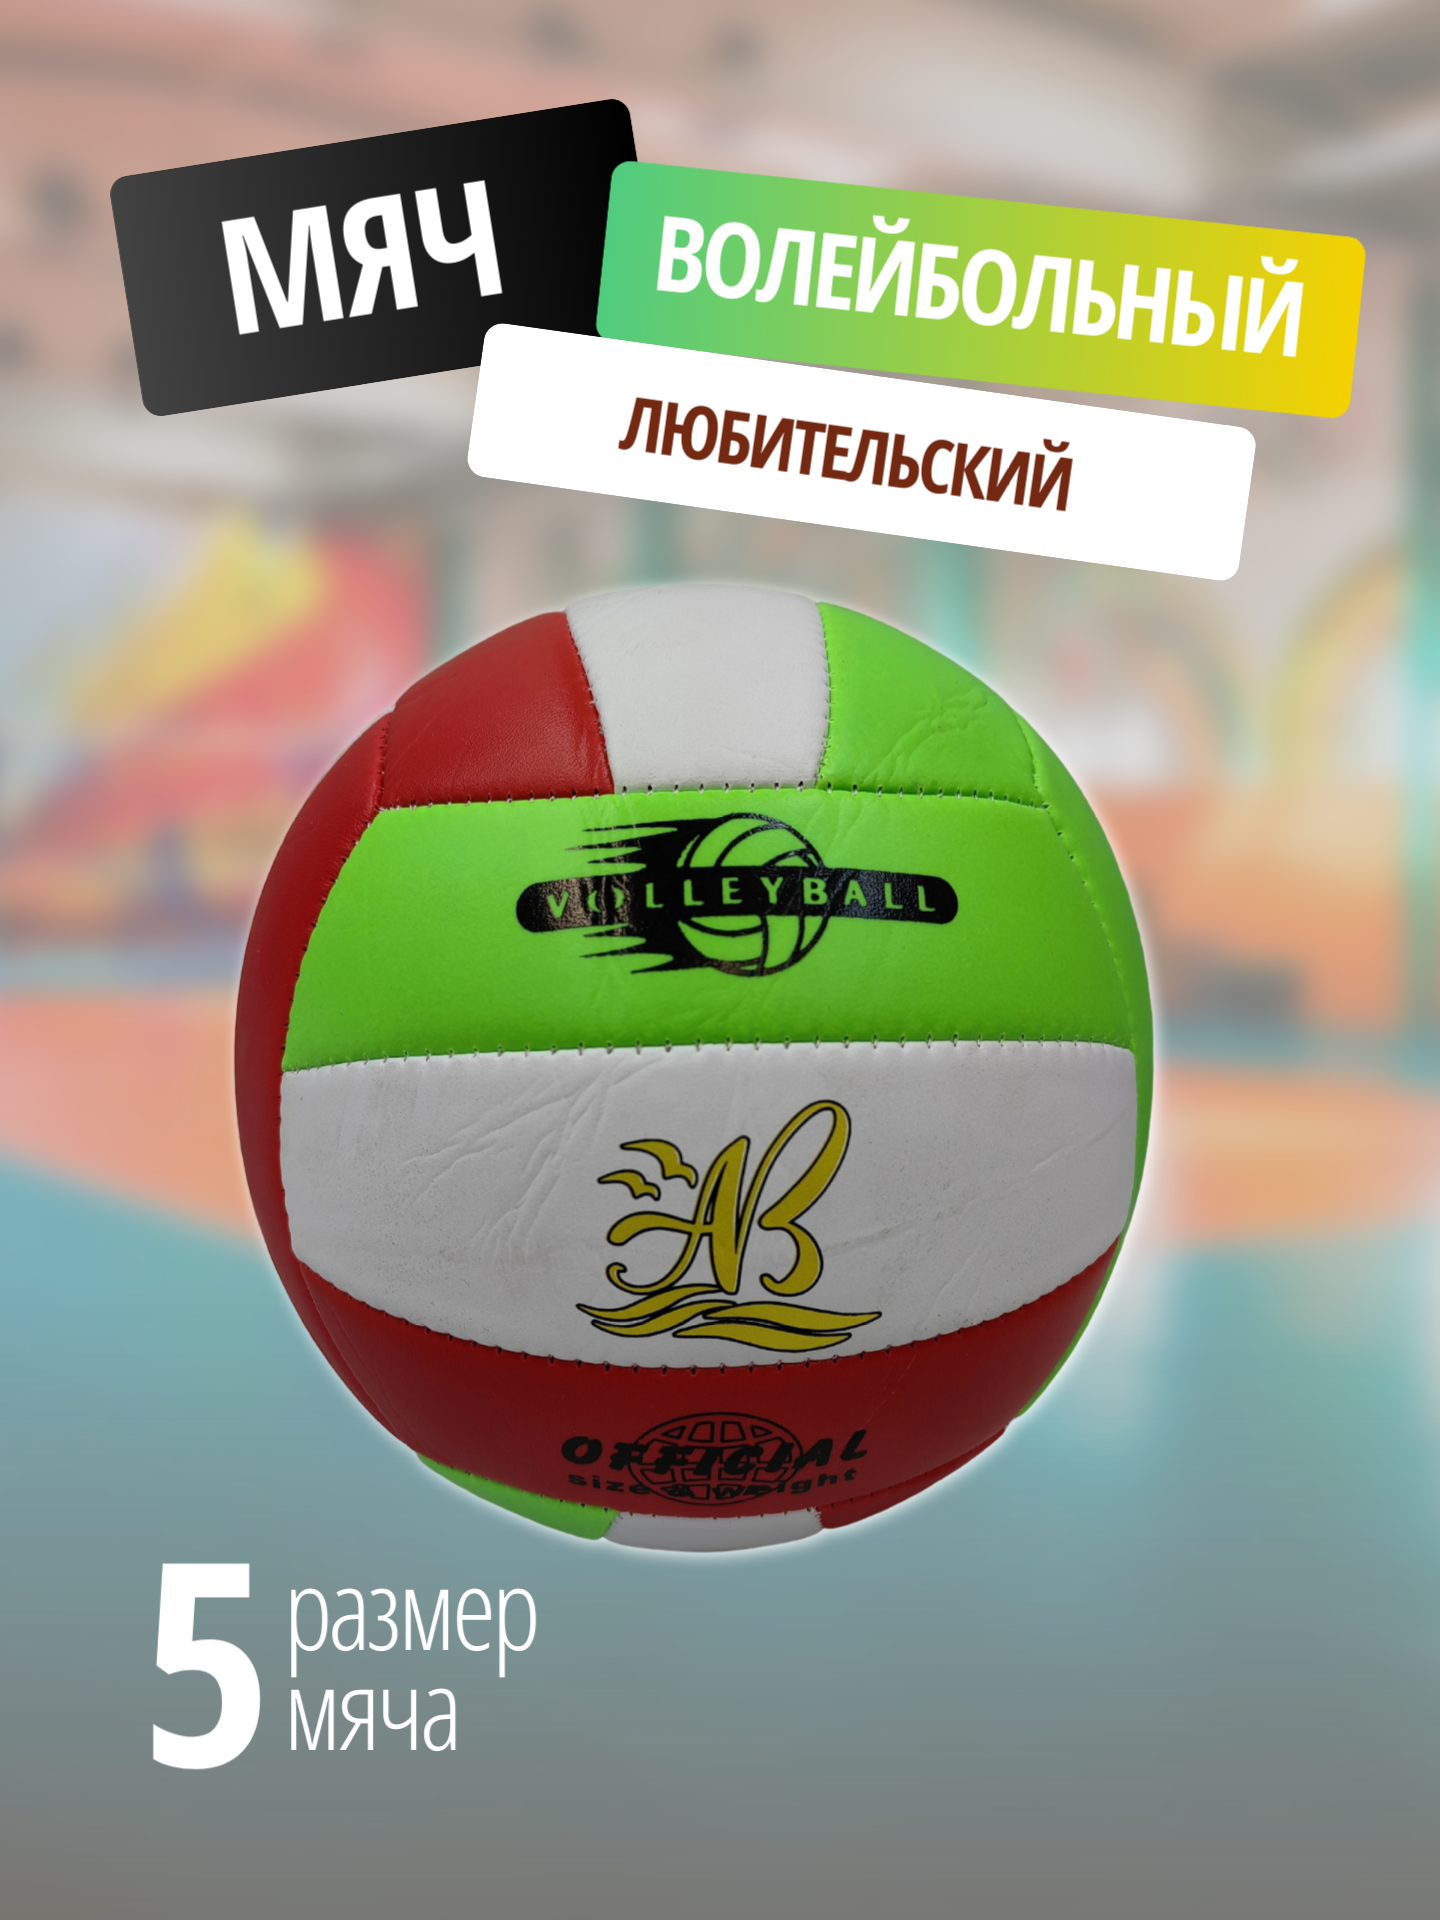 Волейбольный мяч / Мяч для волейбола, размер 5 / белый, зелёный, красный